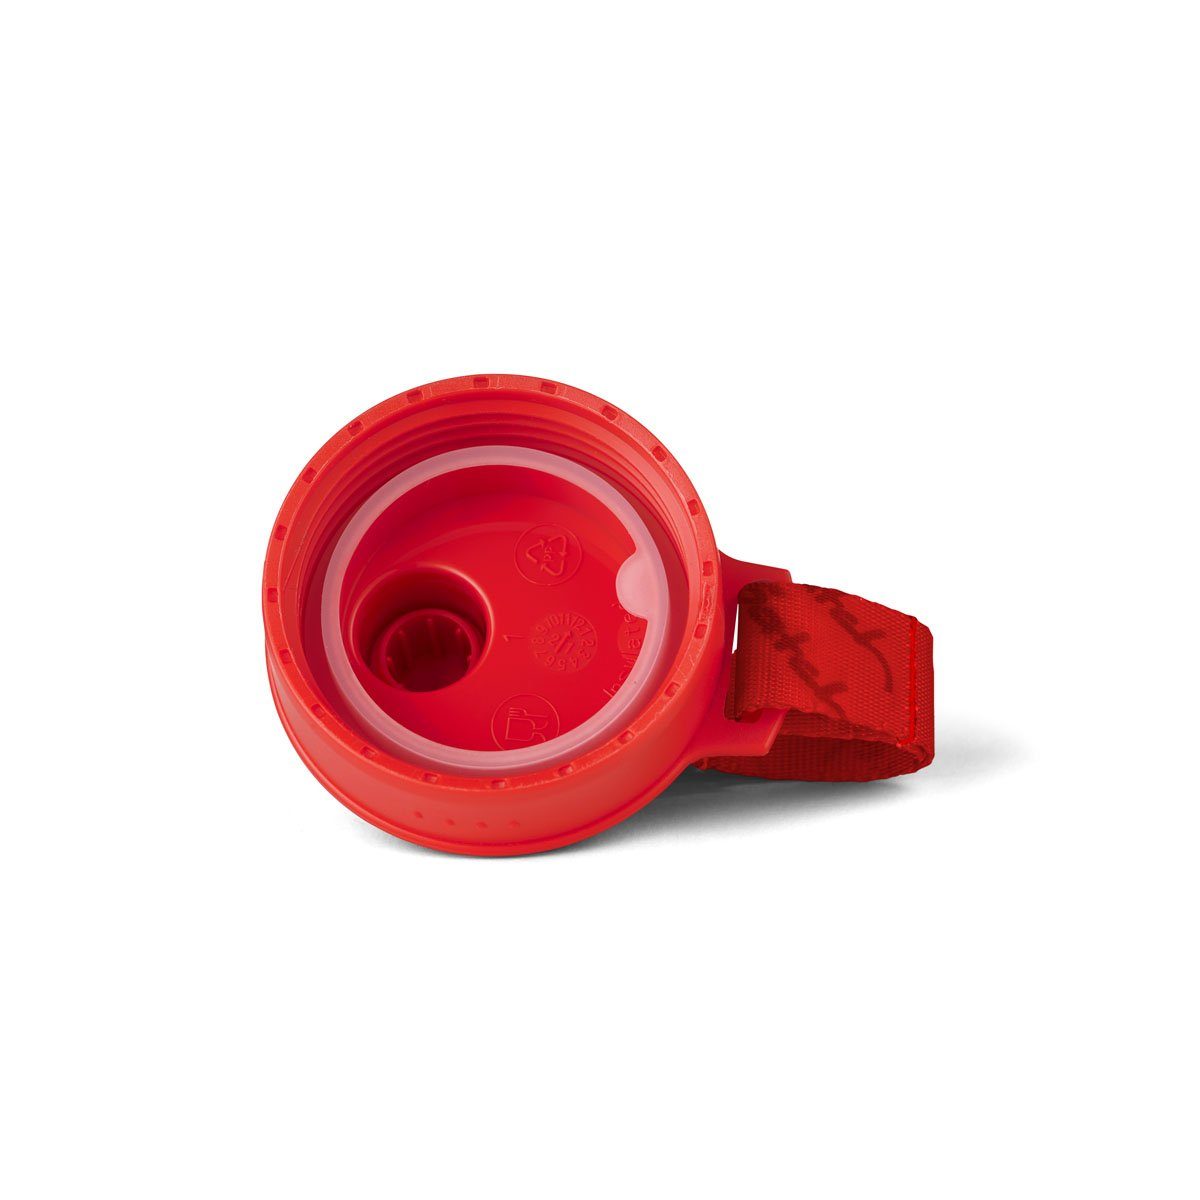 Trinkflasche Satch 517 Red BPA-frei Edelstahl-Trinkflasche,